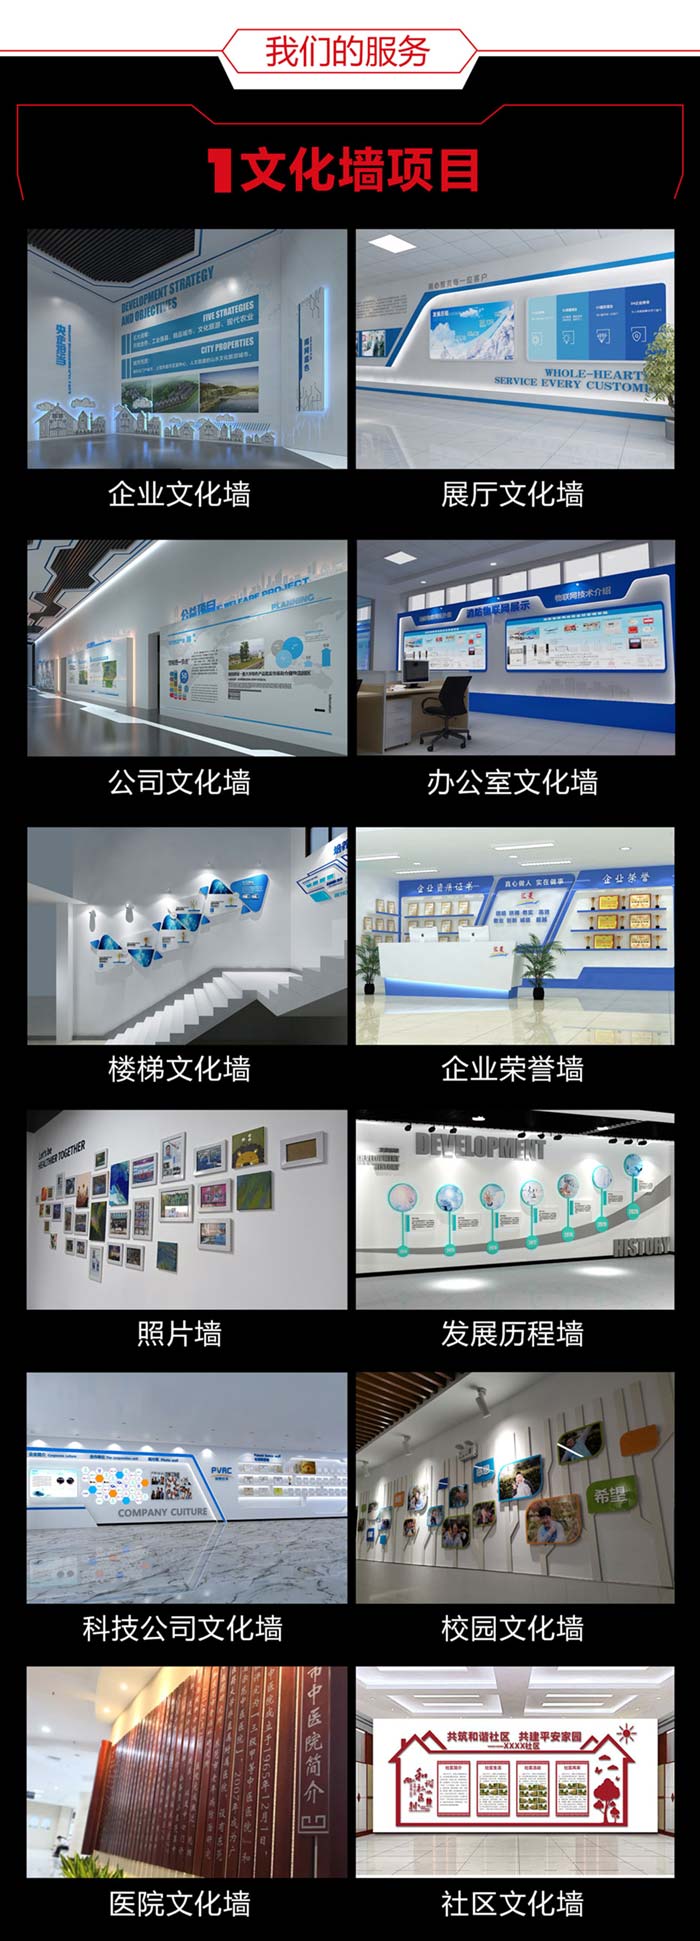 滁州滁州滁州文化墙设计详情页700切片图_04.jpg